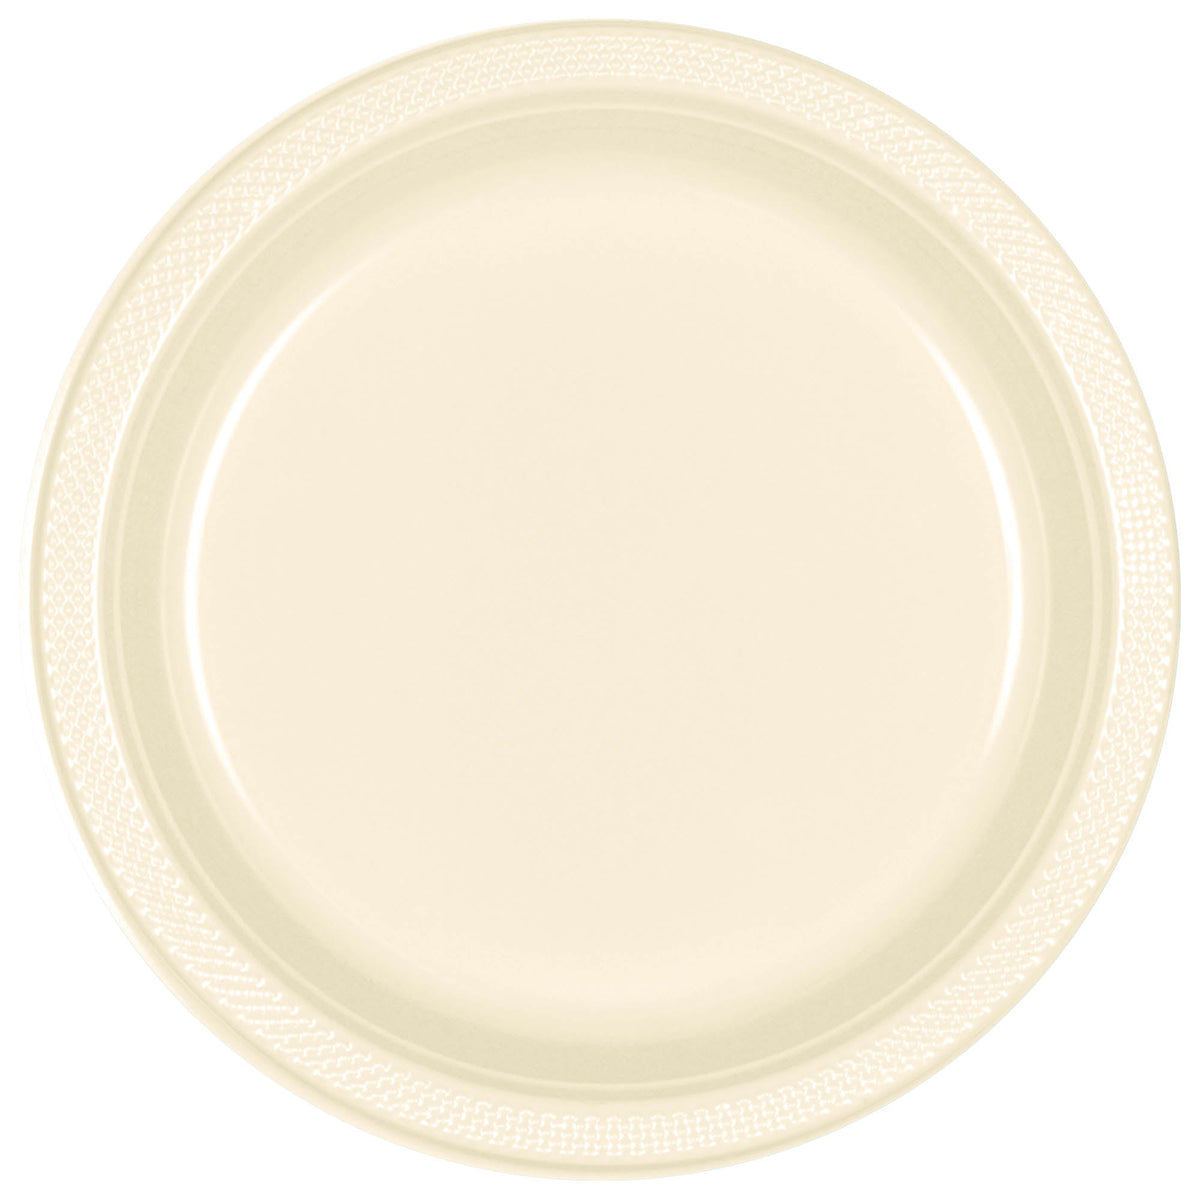 Vanilla Creme 7" Round Plastic Plates  20 count